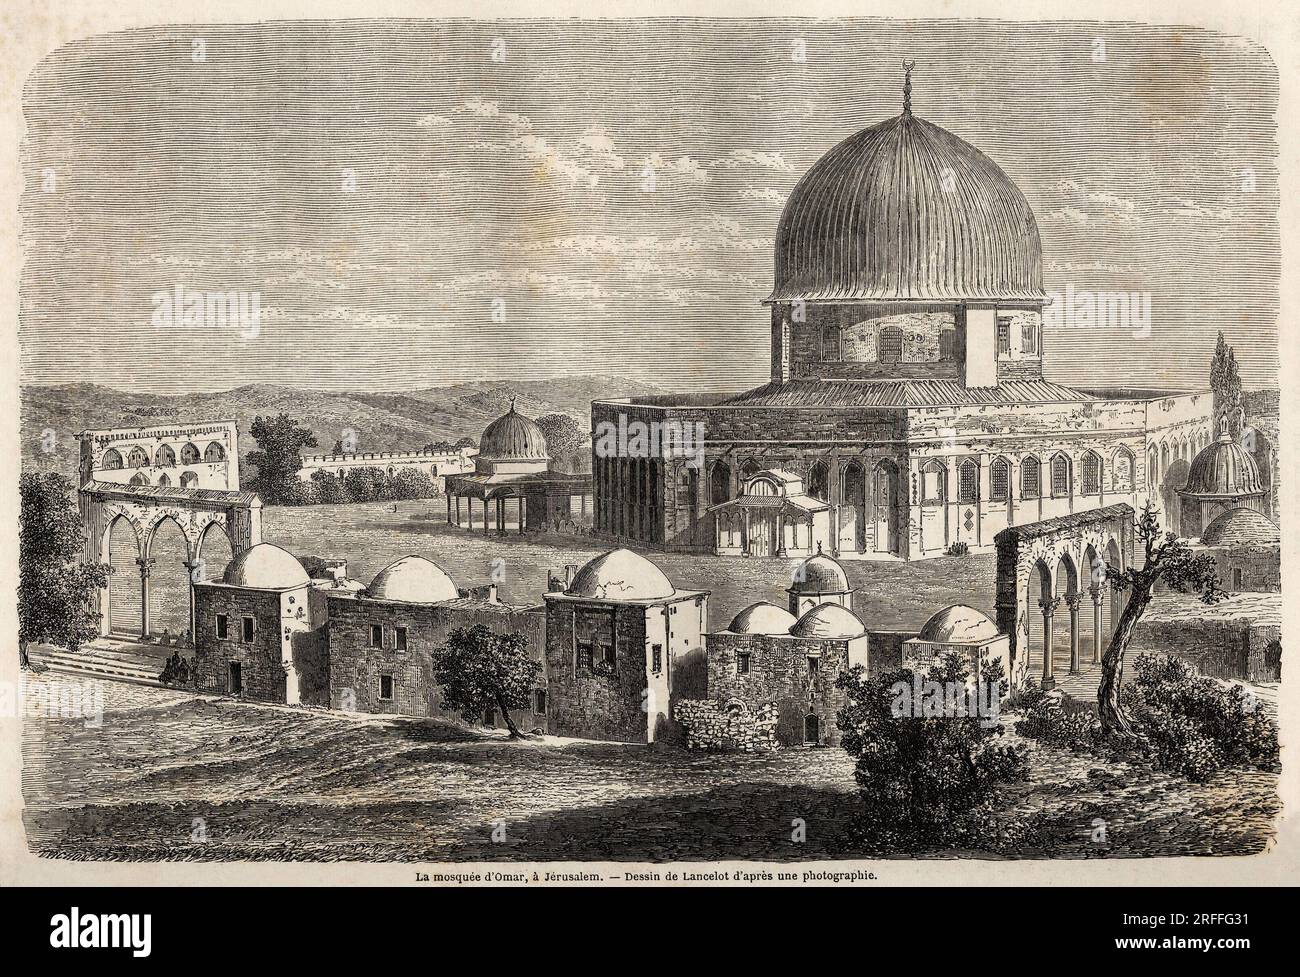 La mosquee d'Omar, edifiee en 691, a Jerusalem, dessin de Lancelot, pour illustrer le voyage en Palestine, en 1856, de M. Bida. Gravure in 'Le tour du monde, nouveau journal des voyages' Paris, 1860. Stock Photo